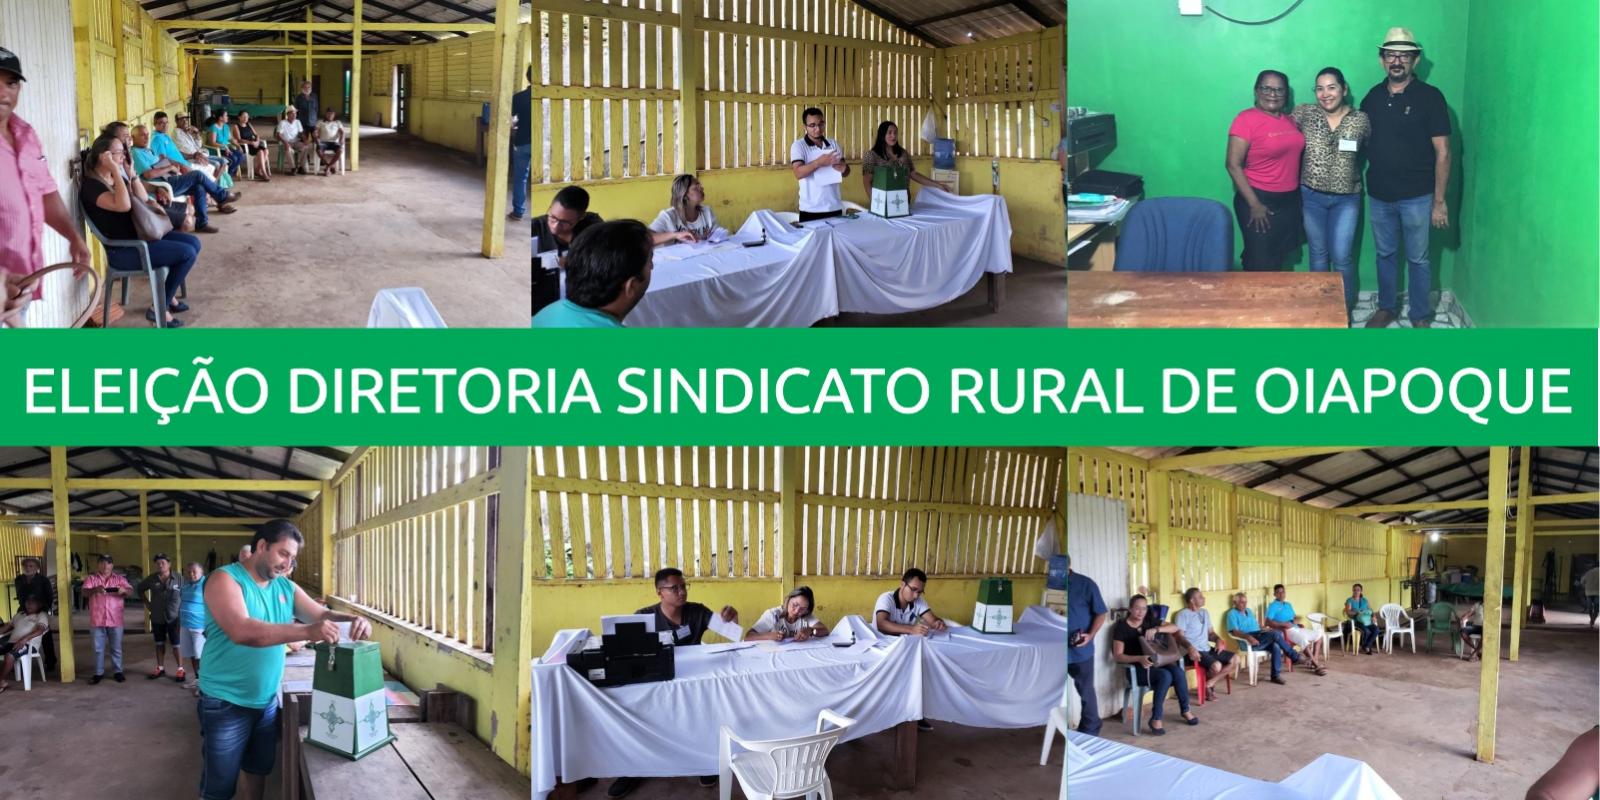 Sindicato Rural de Oiapoque elege diretoria 2019-2022 e inaugura nova sede administrativa